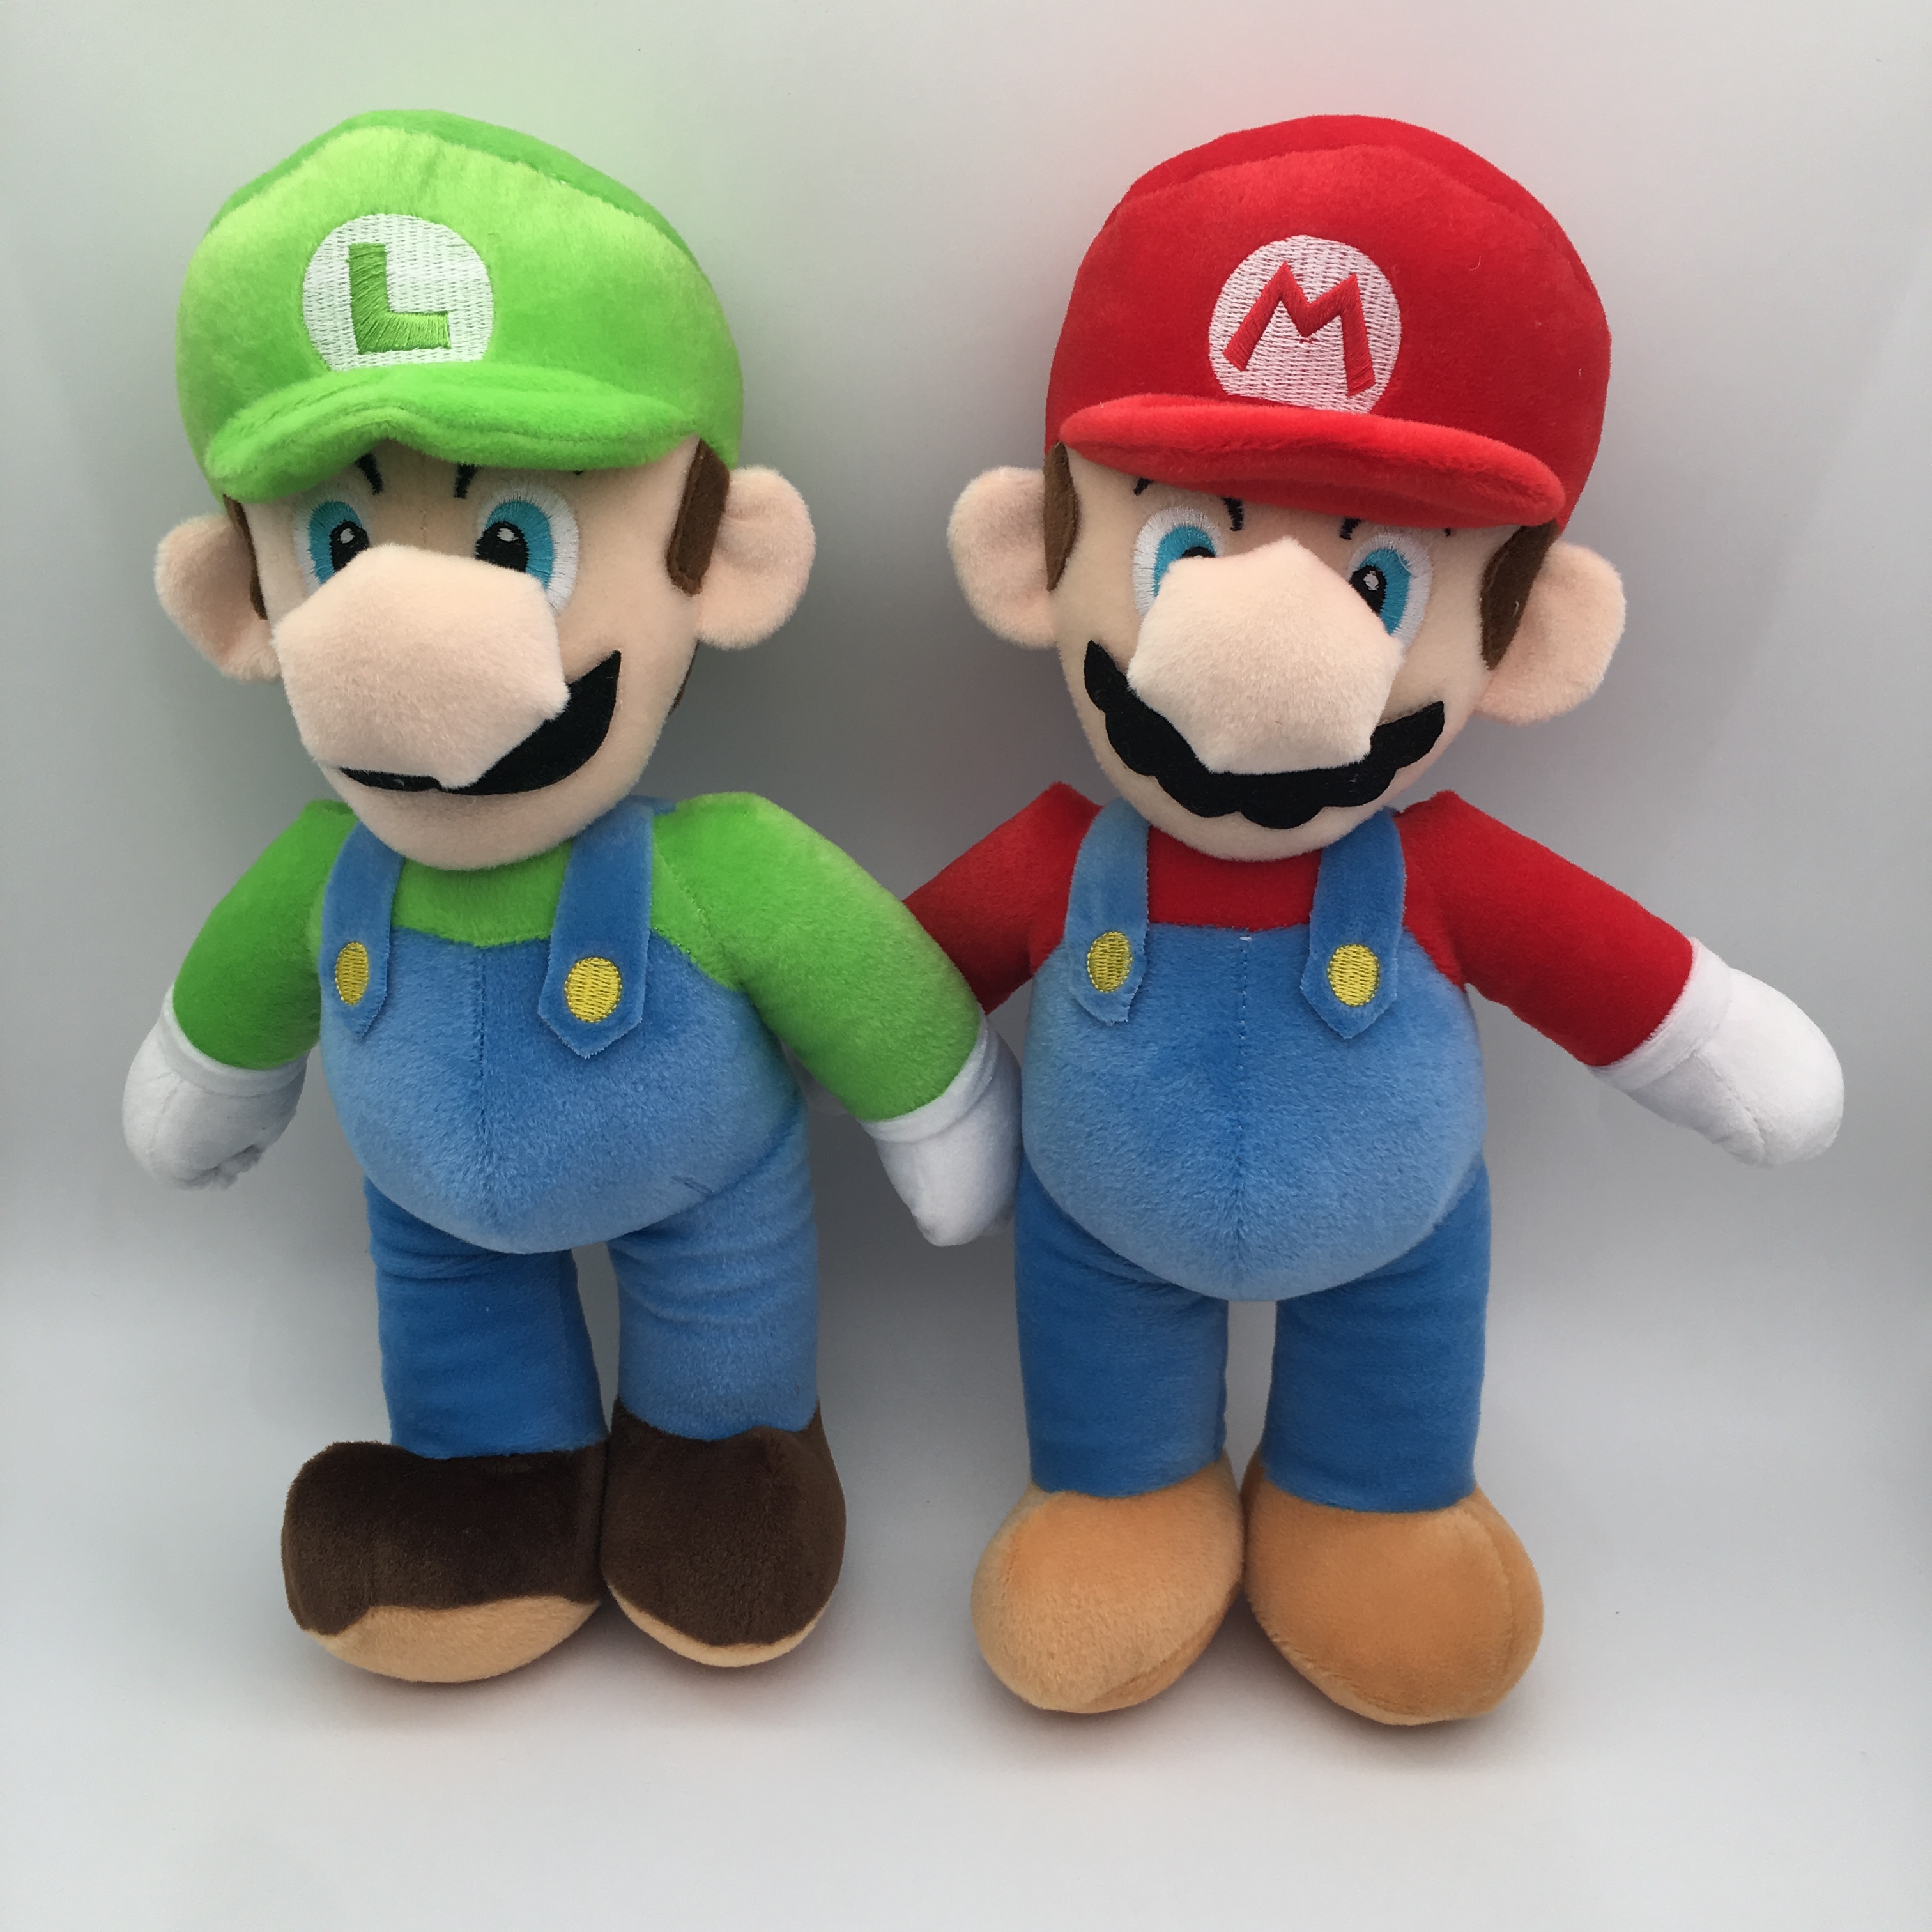 Super Mario Bros. anime plush toys set